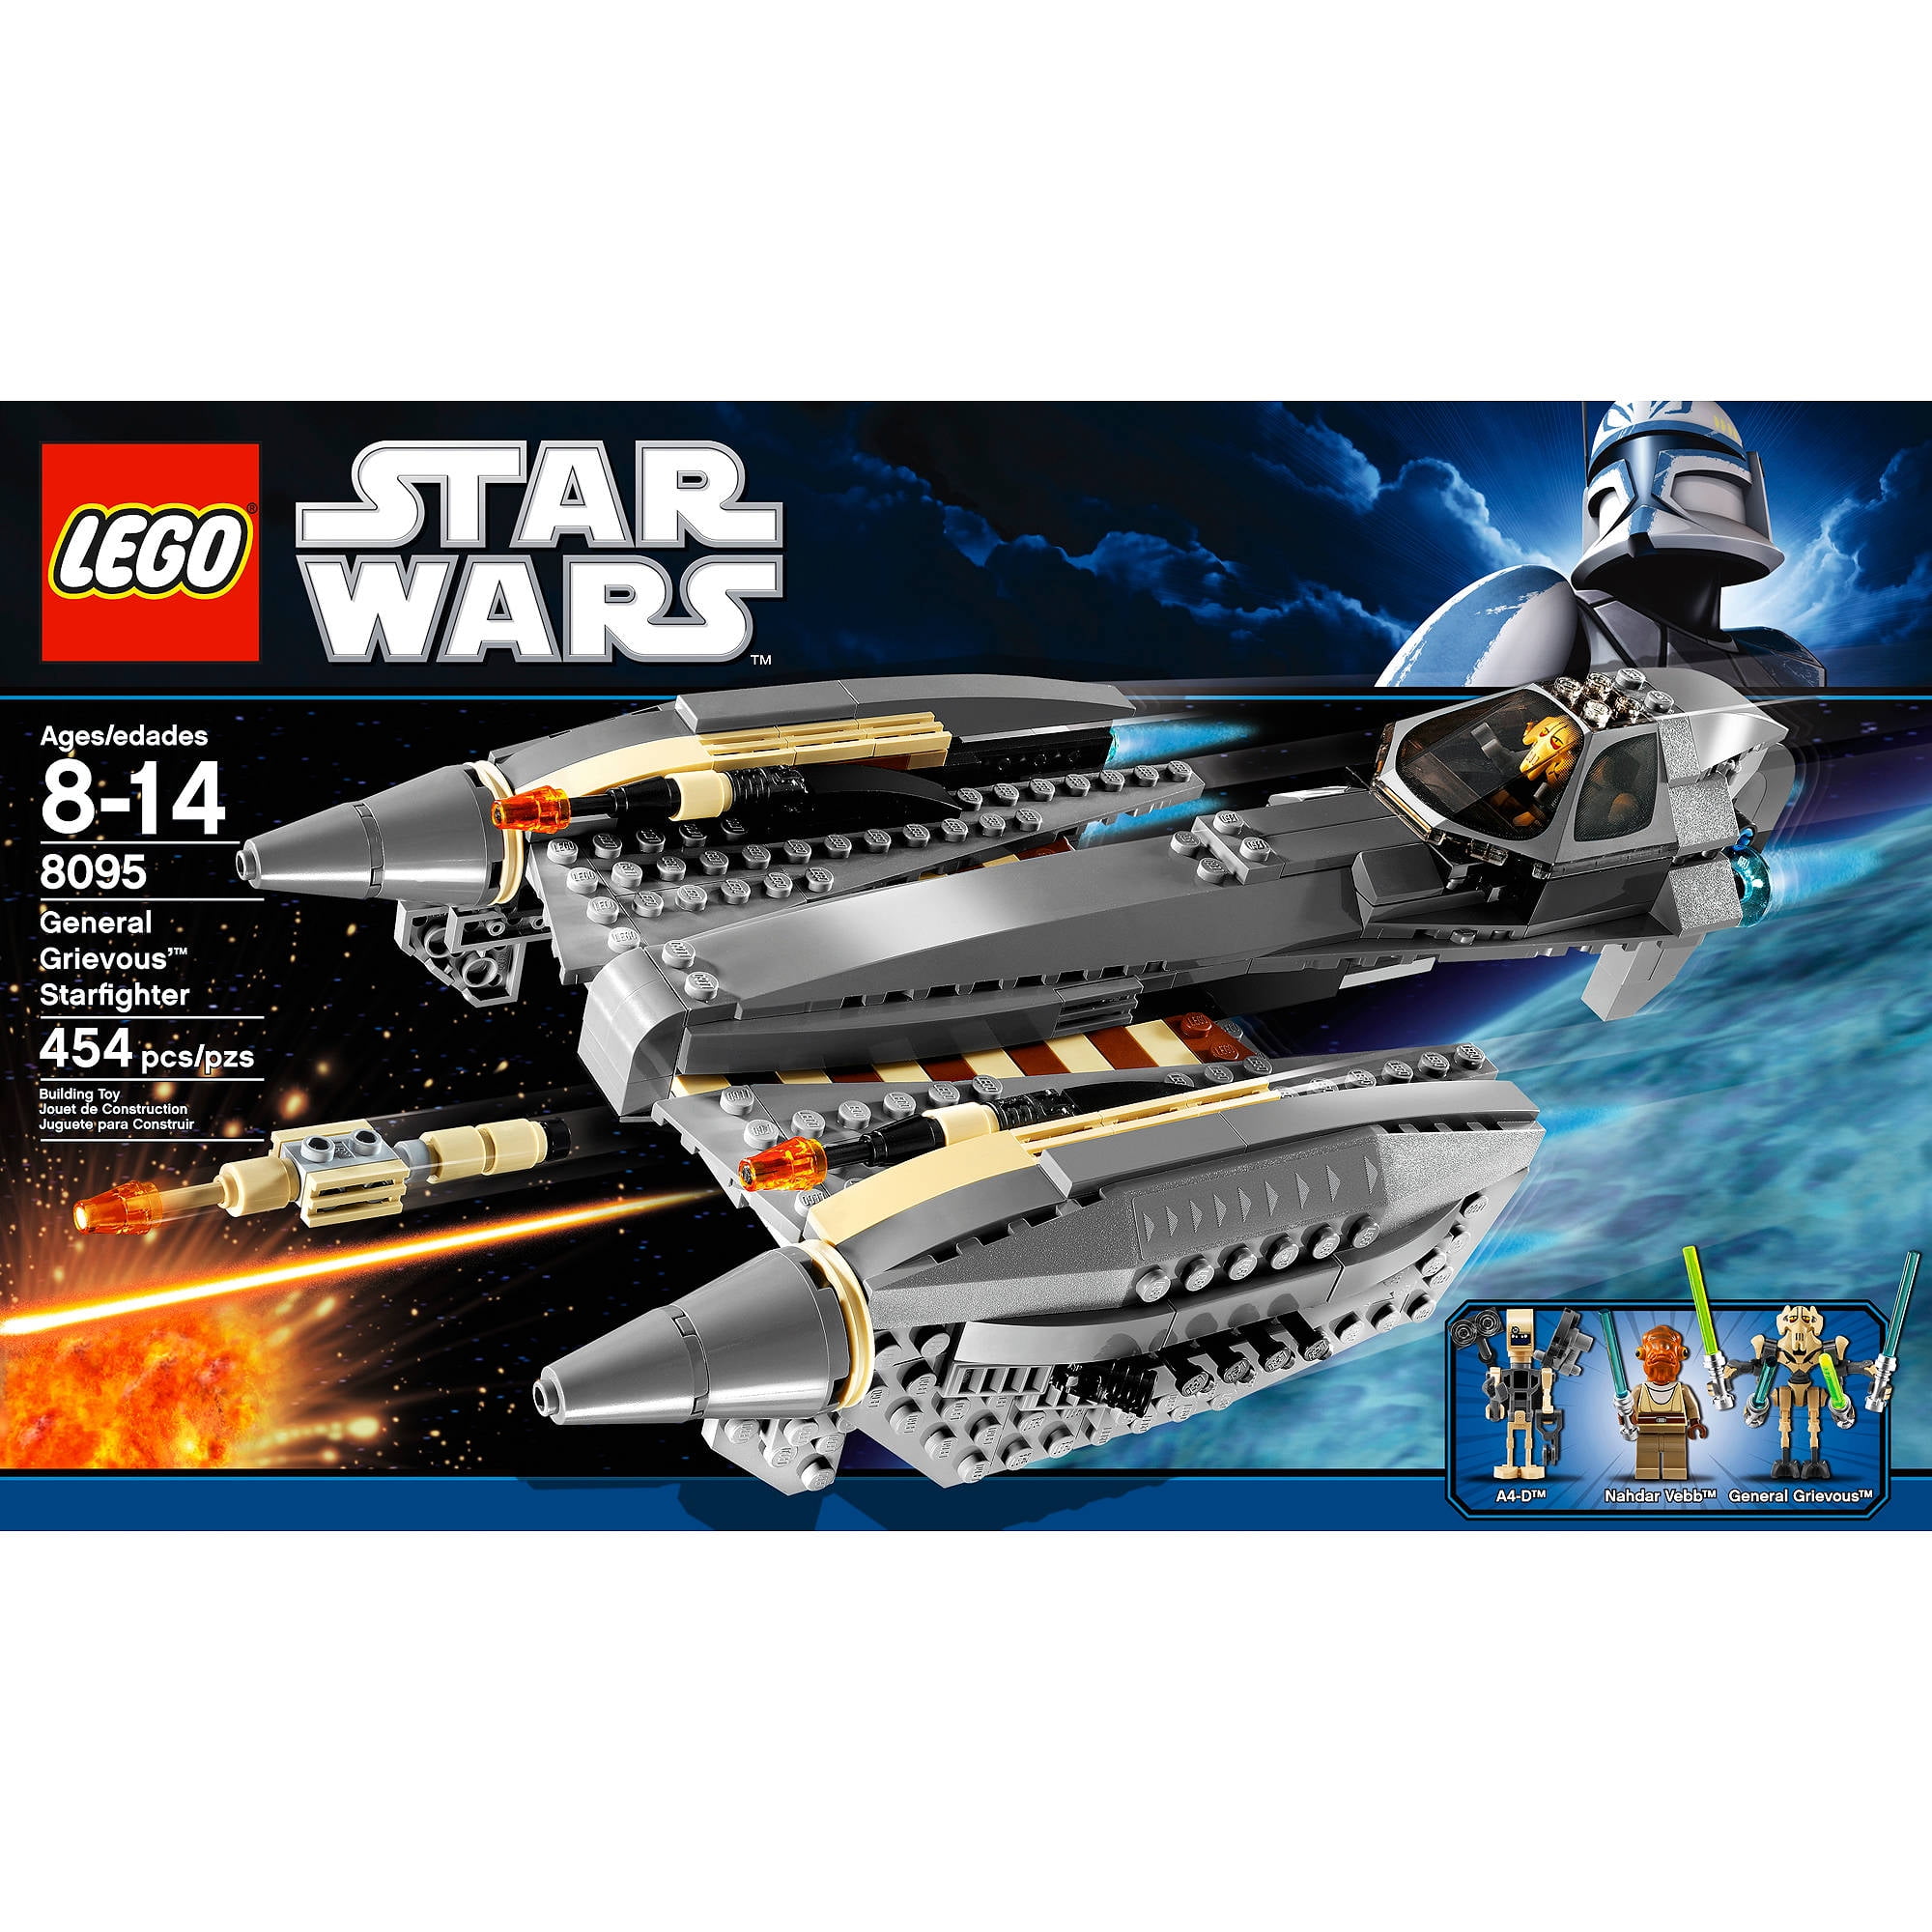 LEGO STAR WARS 8095 Nahdar Vebb Mini figure NEW 